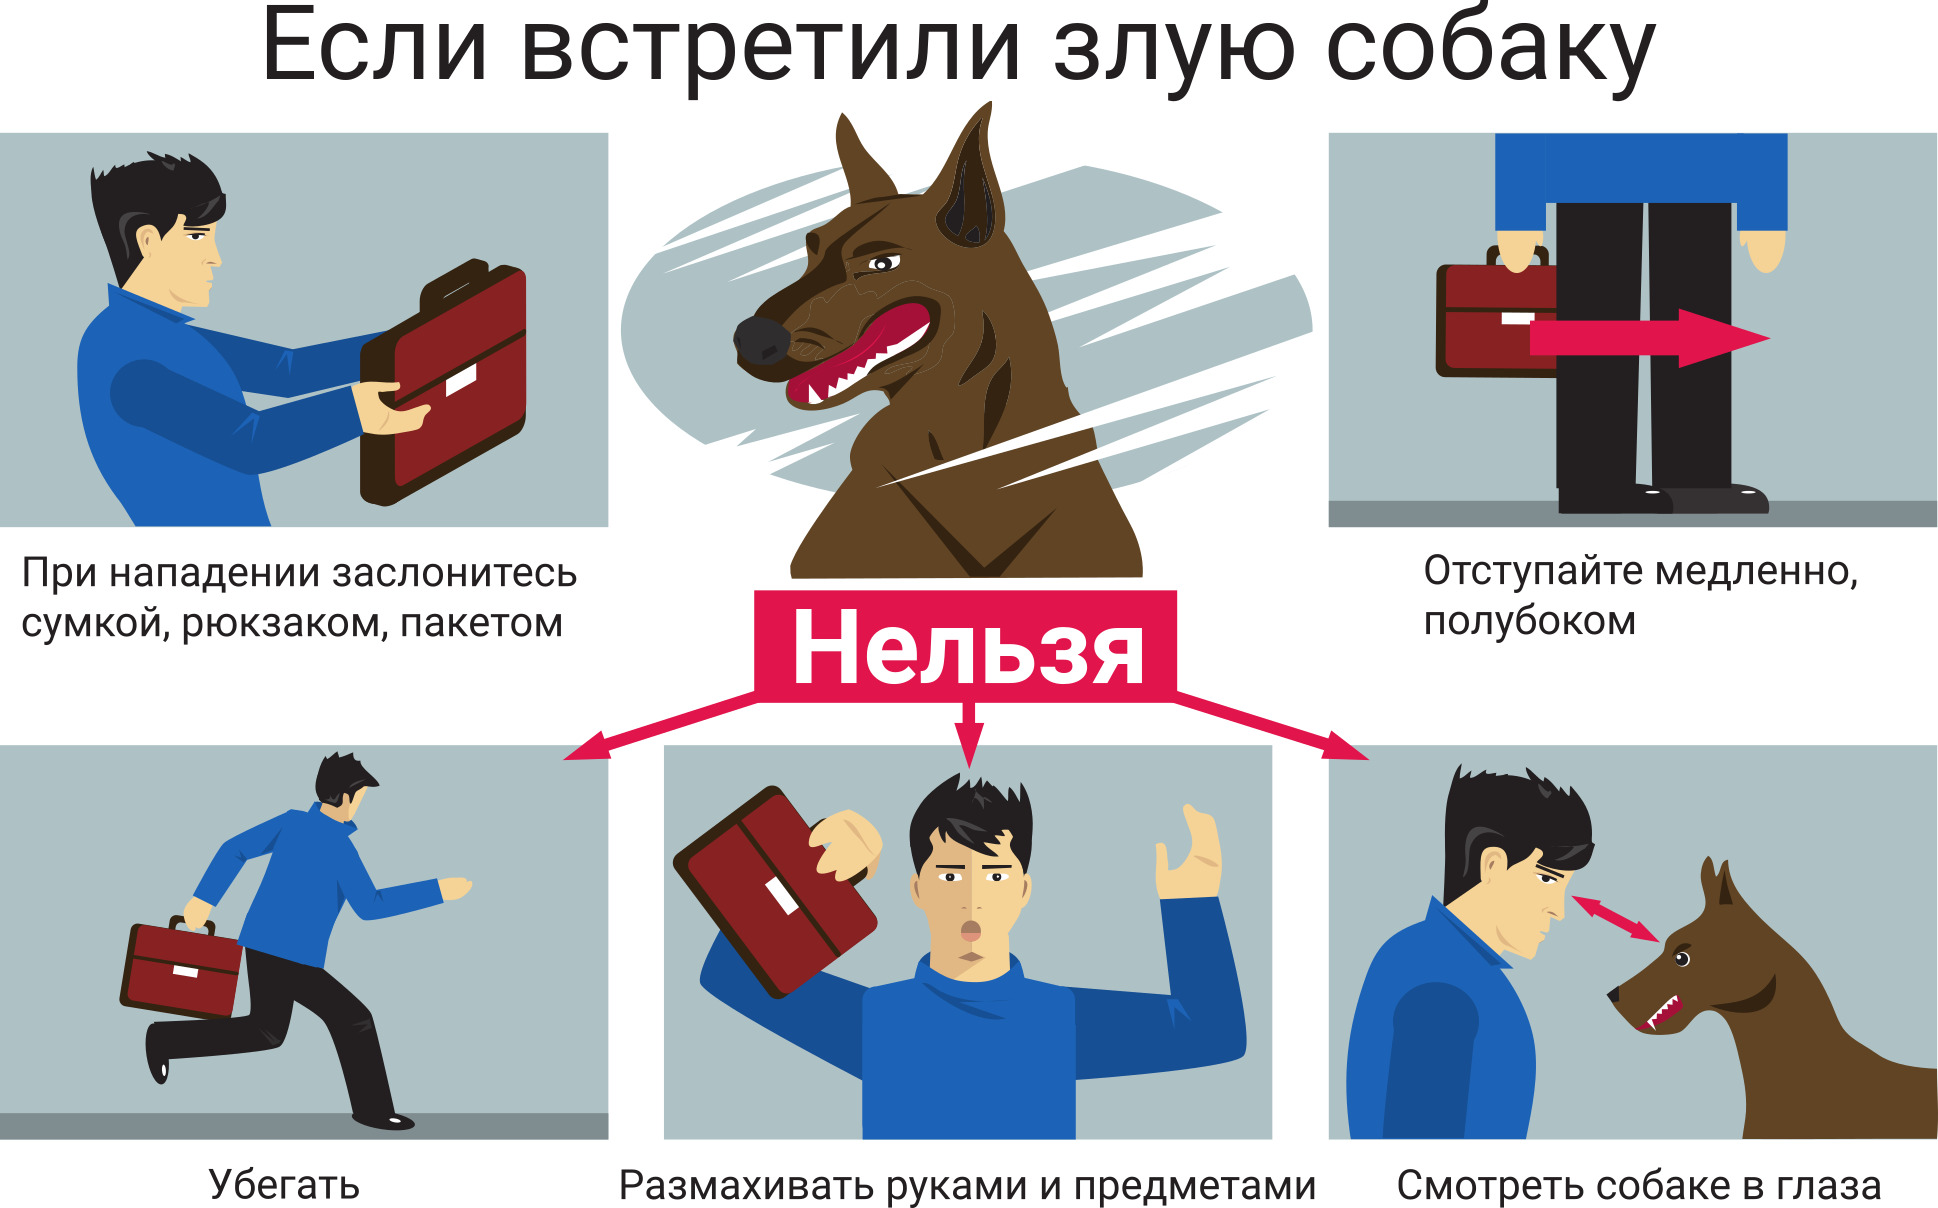 Правила безопасного поведения при встрече с собаками